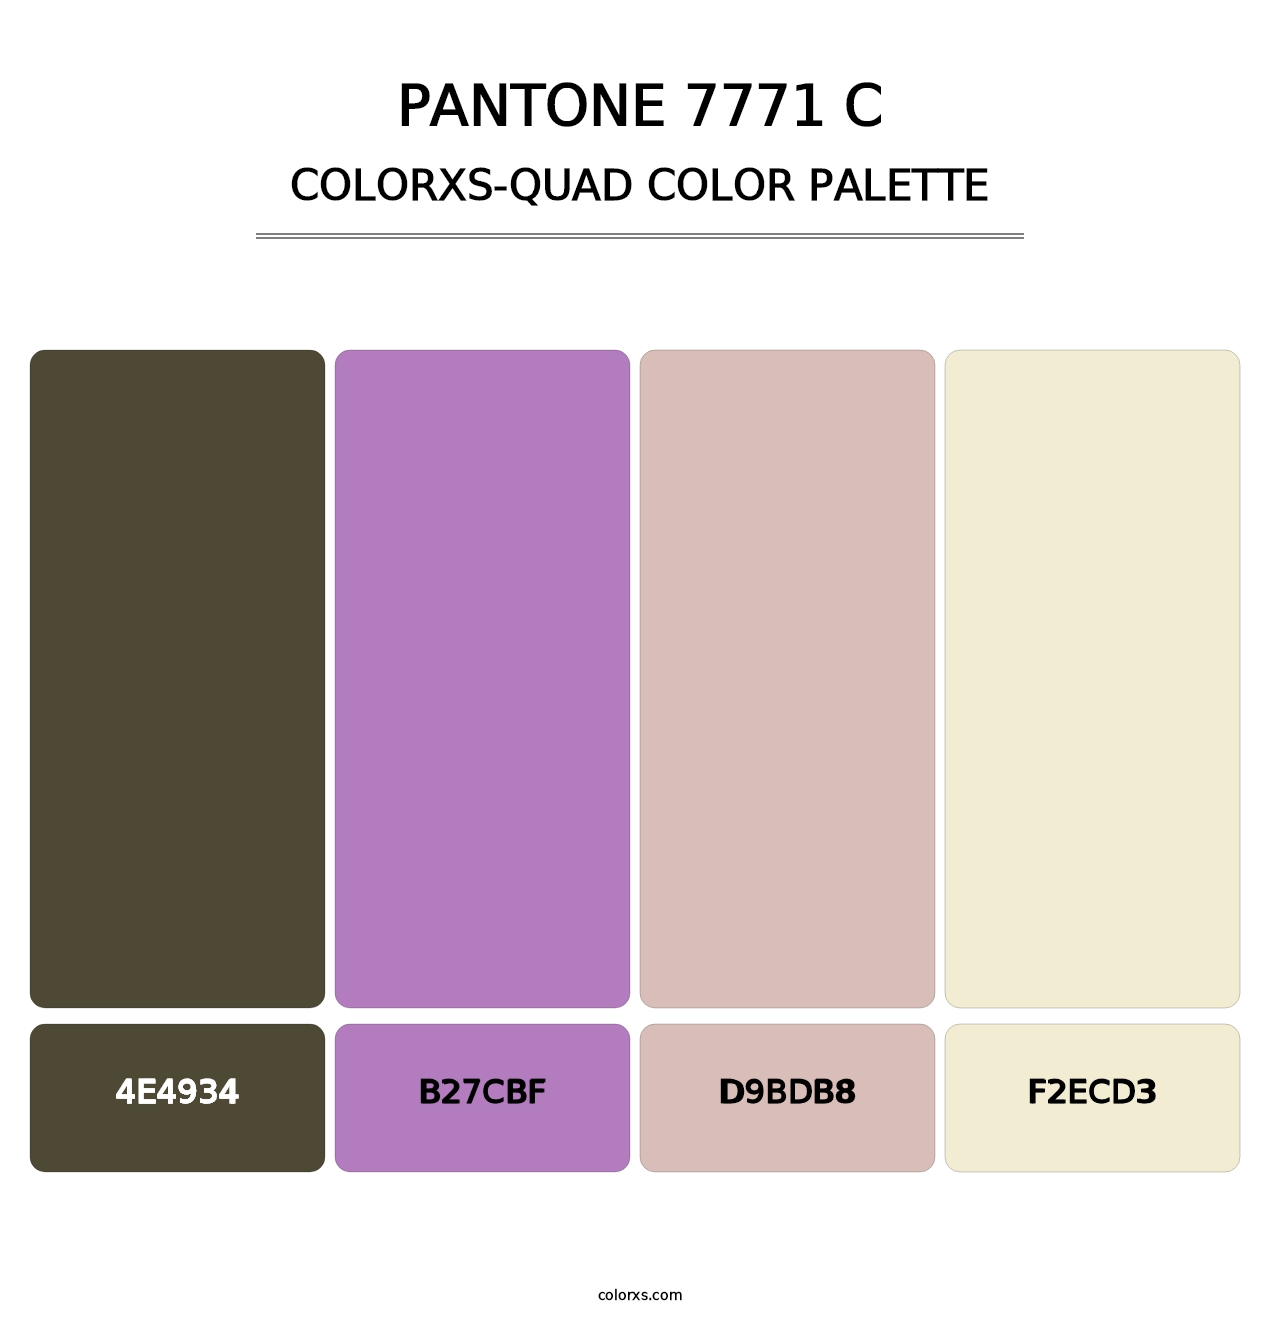 PANTONE 7771 C - Colorxs Quad Palette